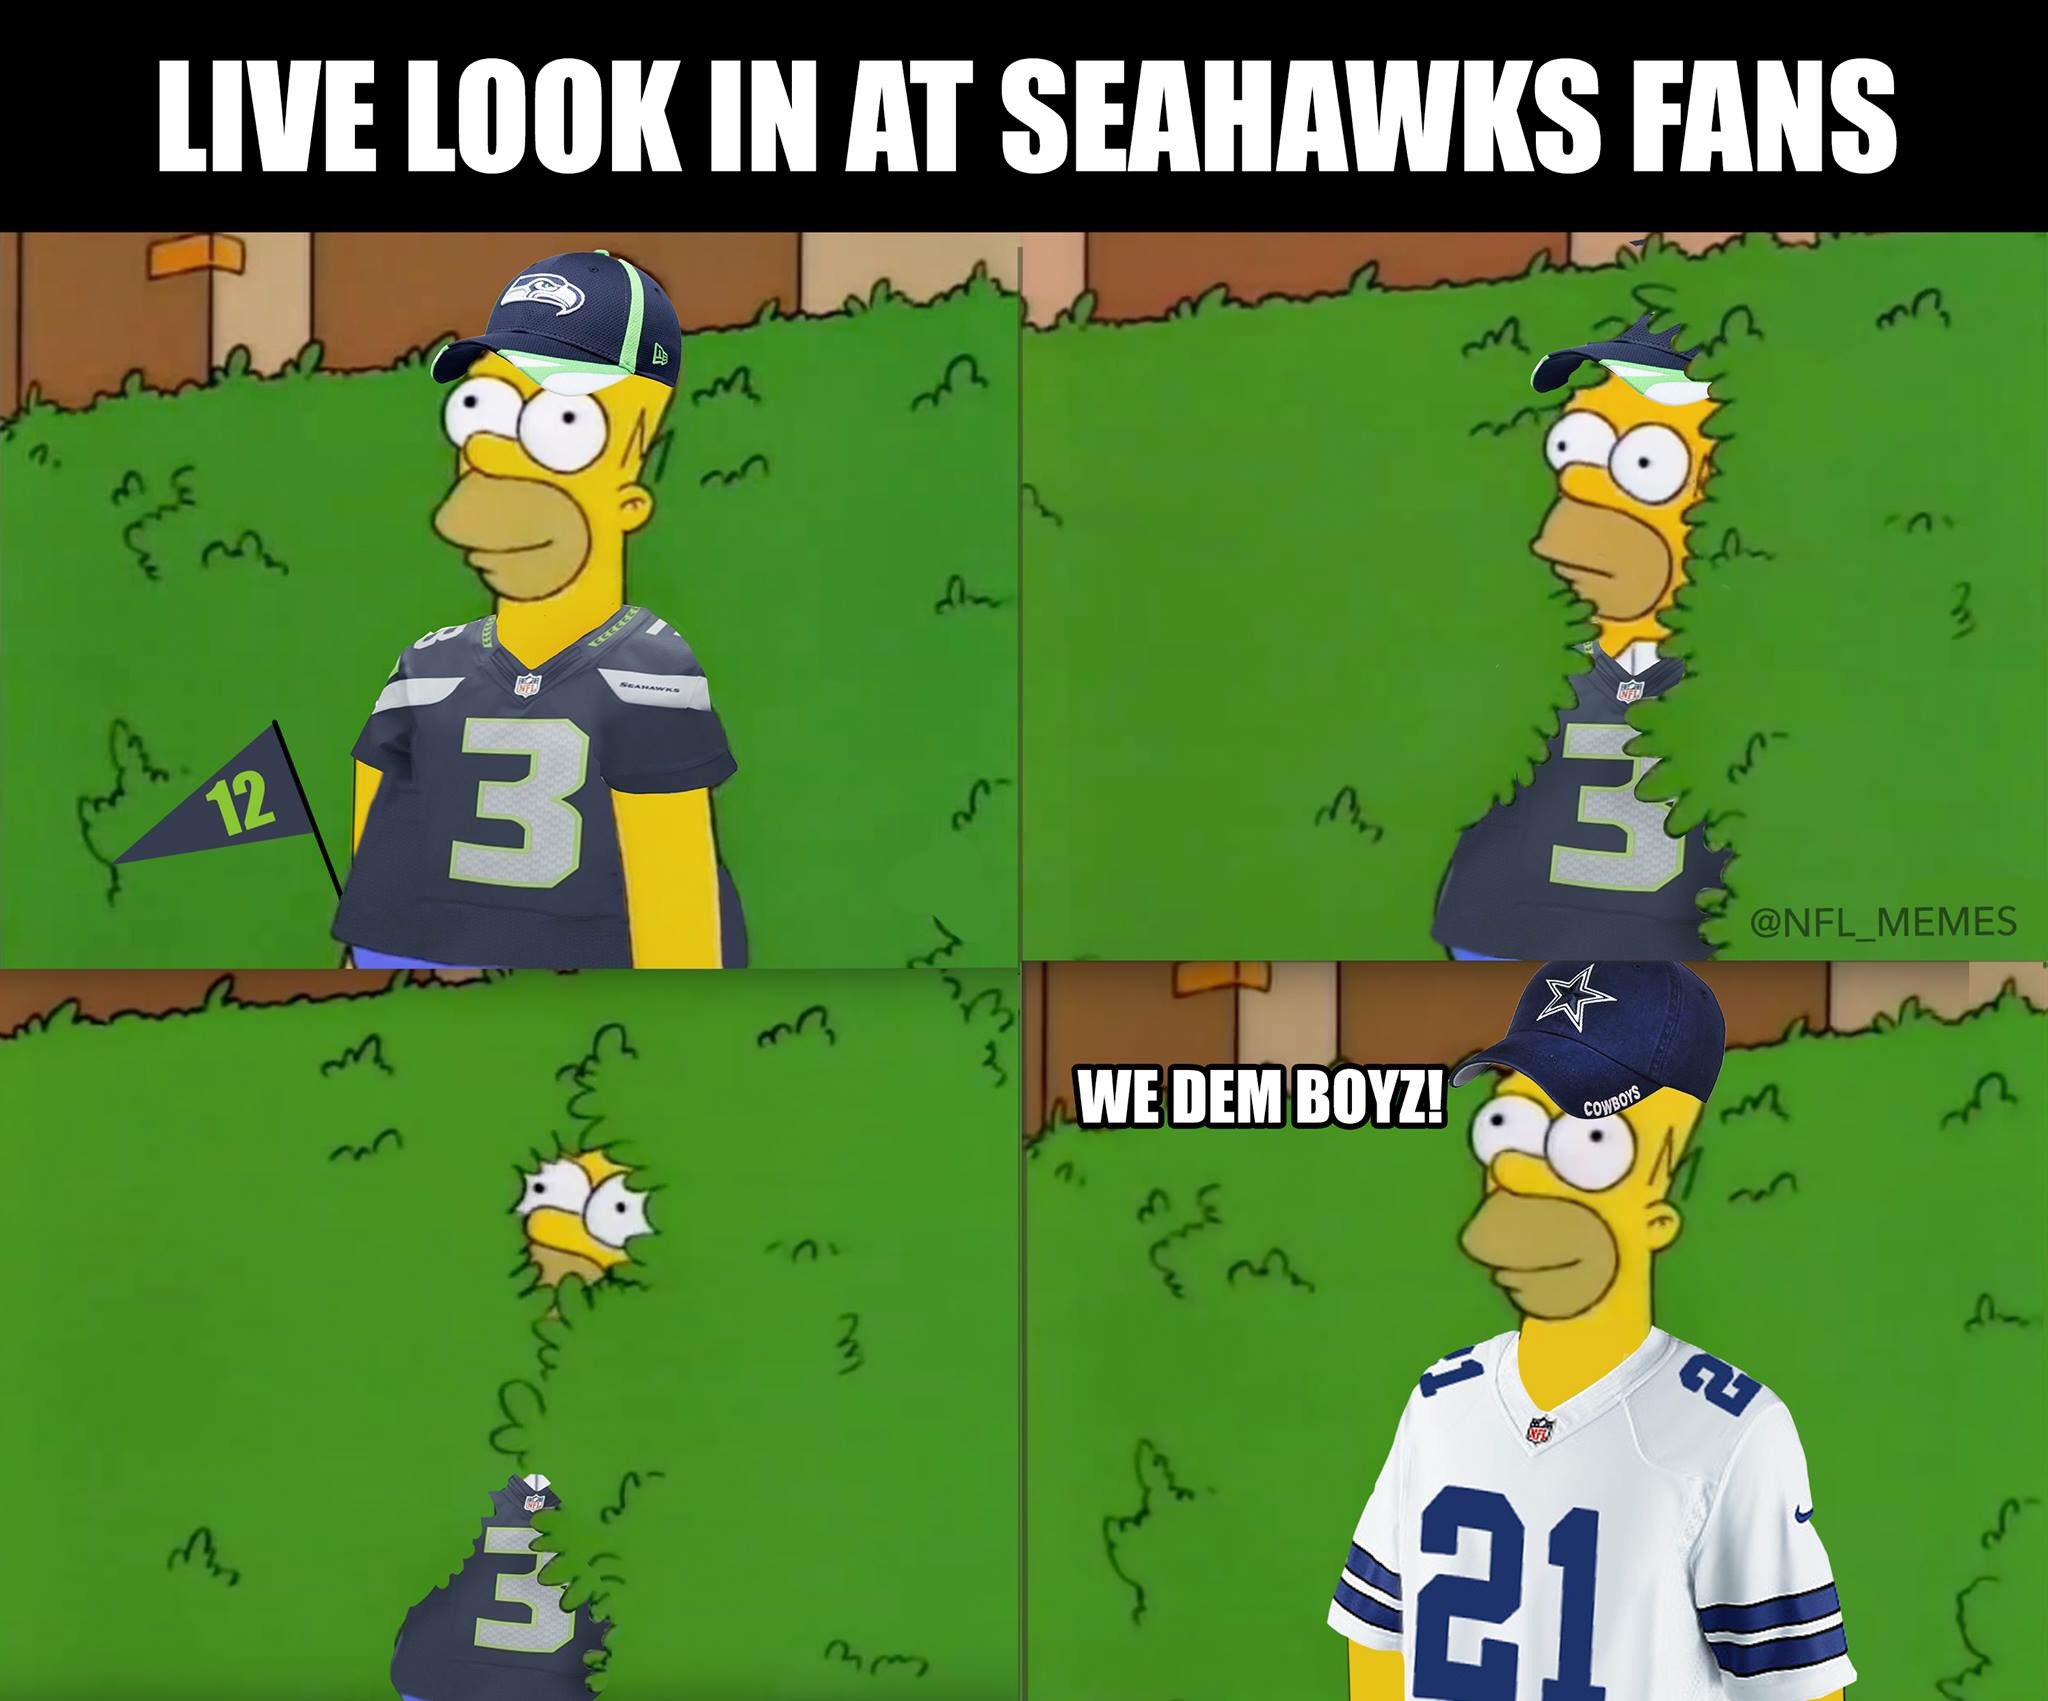 Seahawks fans! 